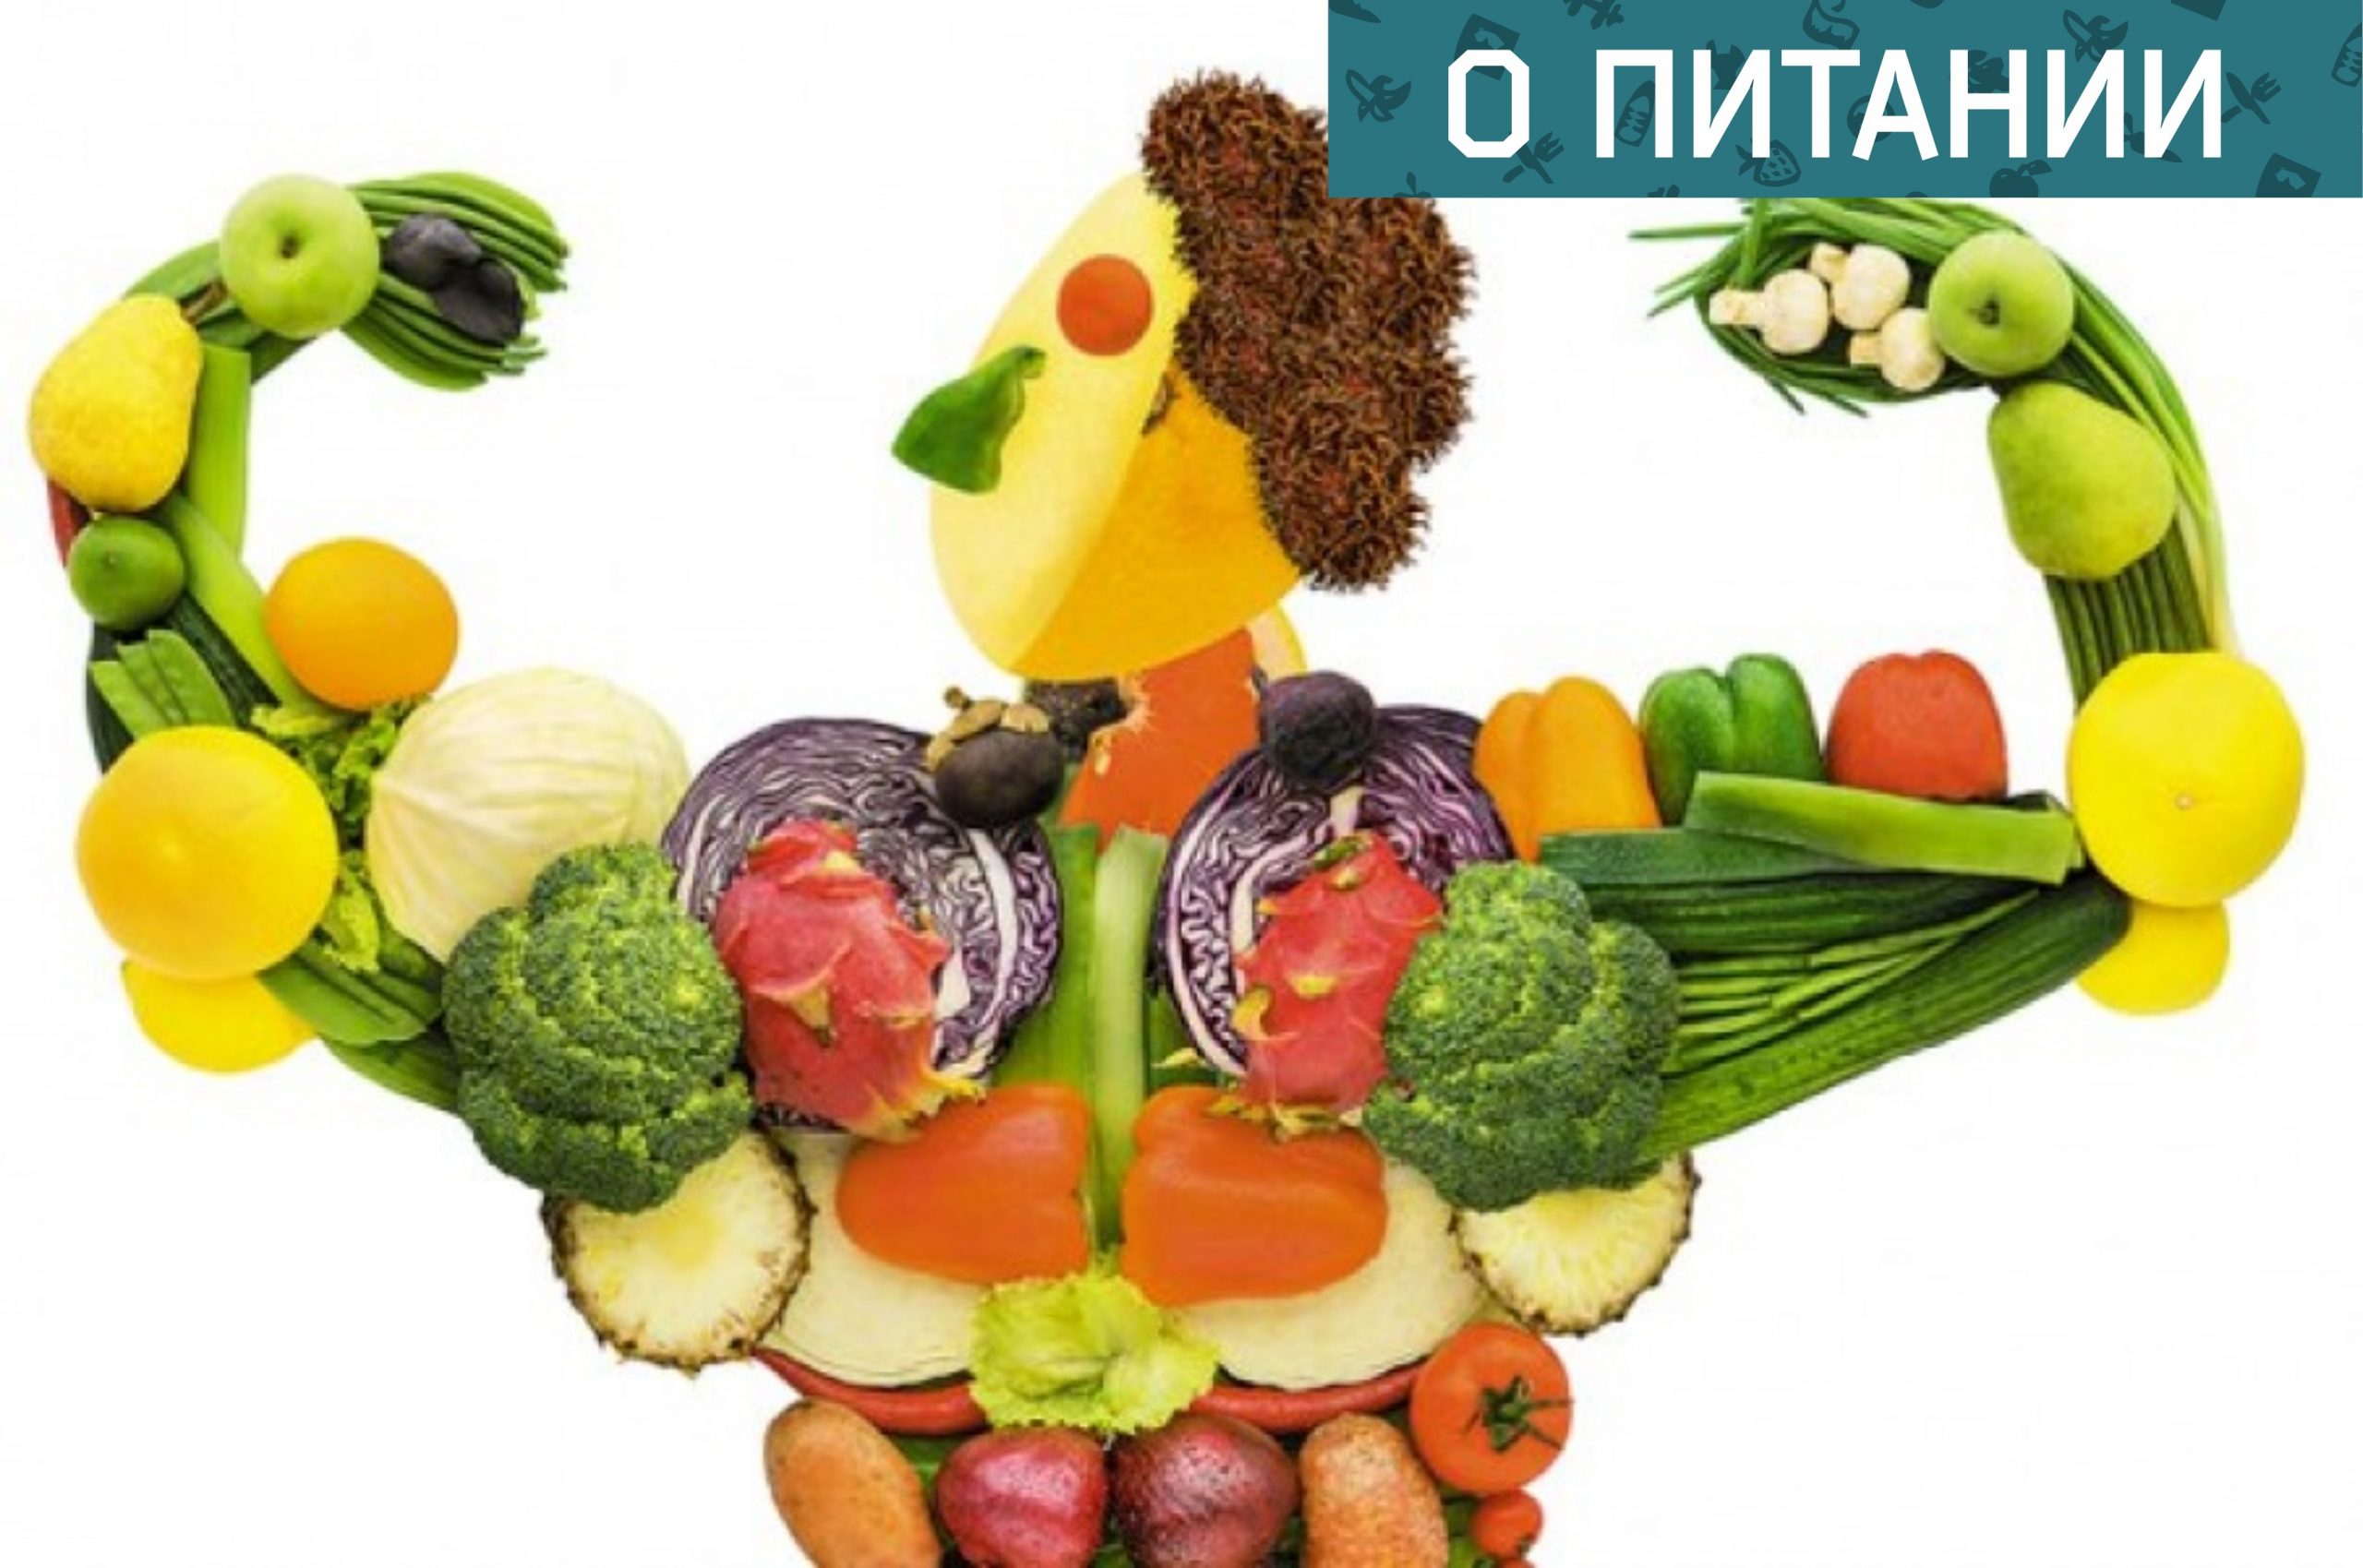 Здоровое и правильное питание и витамины